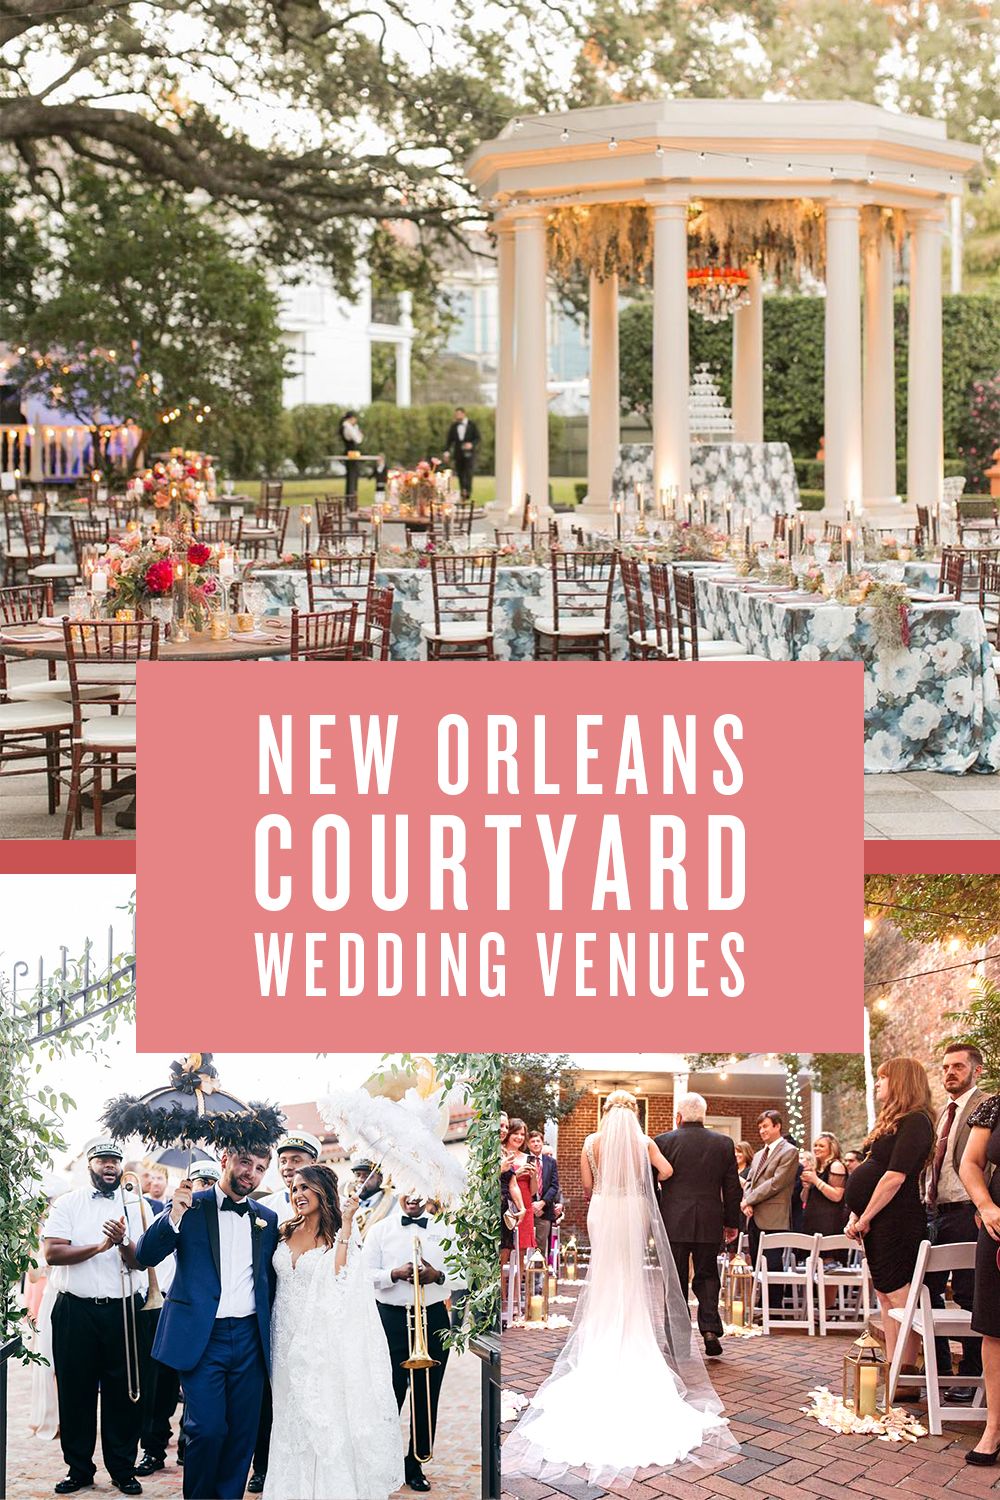 New Orleans Courtyard Wedding Venues Courtyard Wedding Wedding